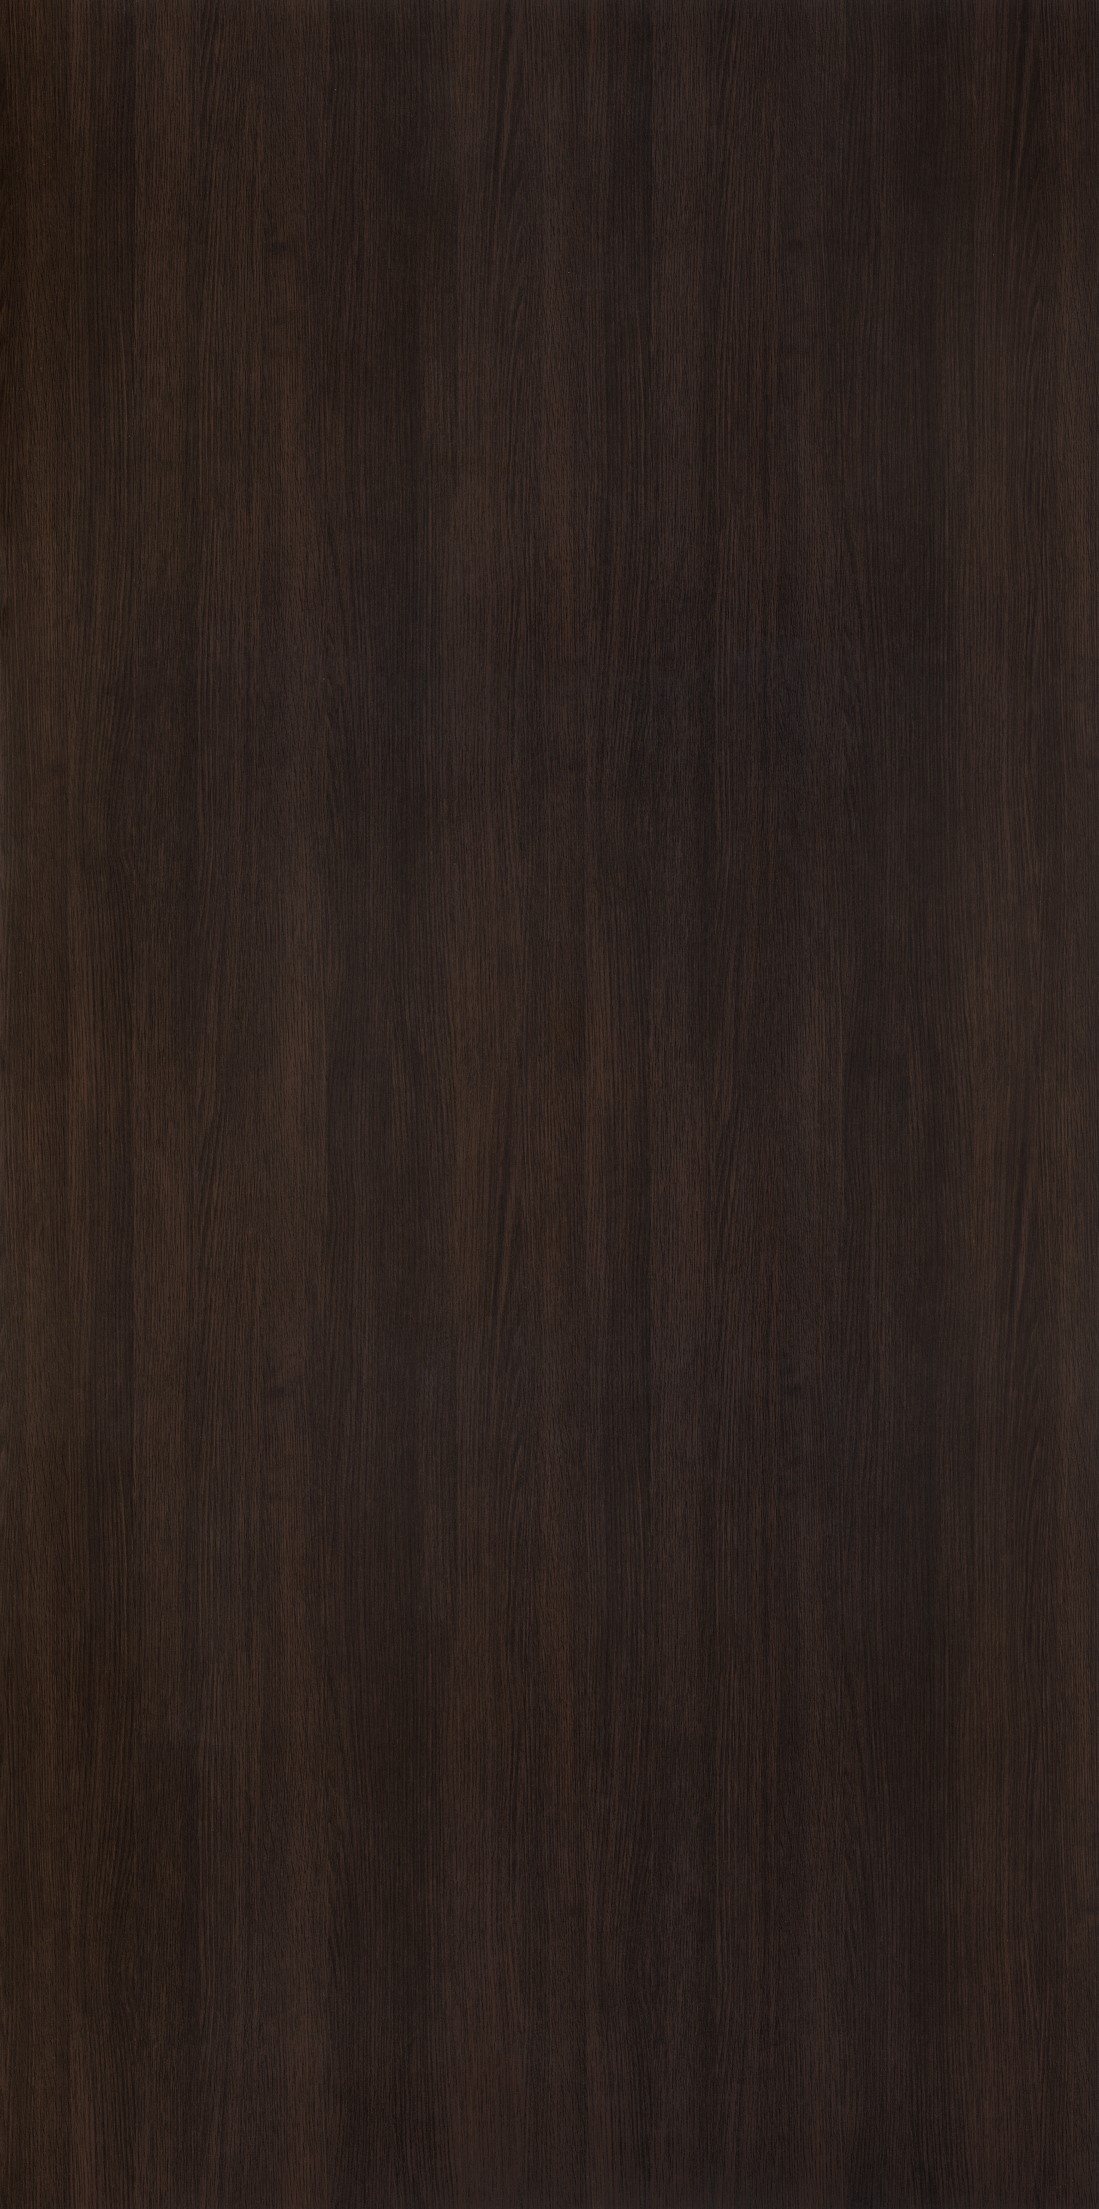 dark oak wood texture